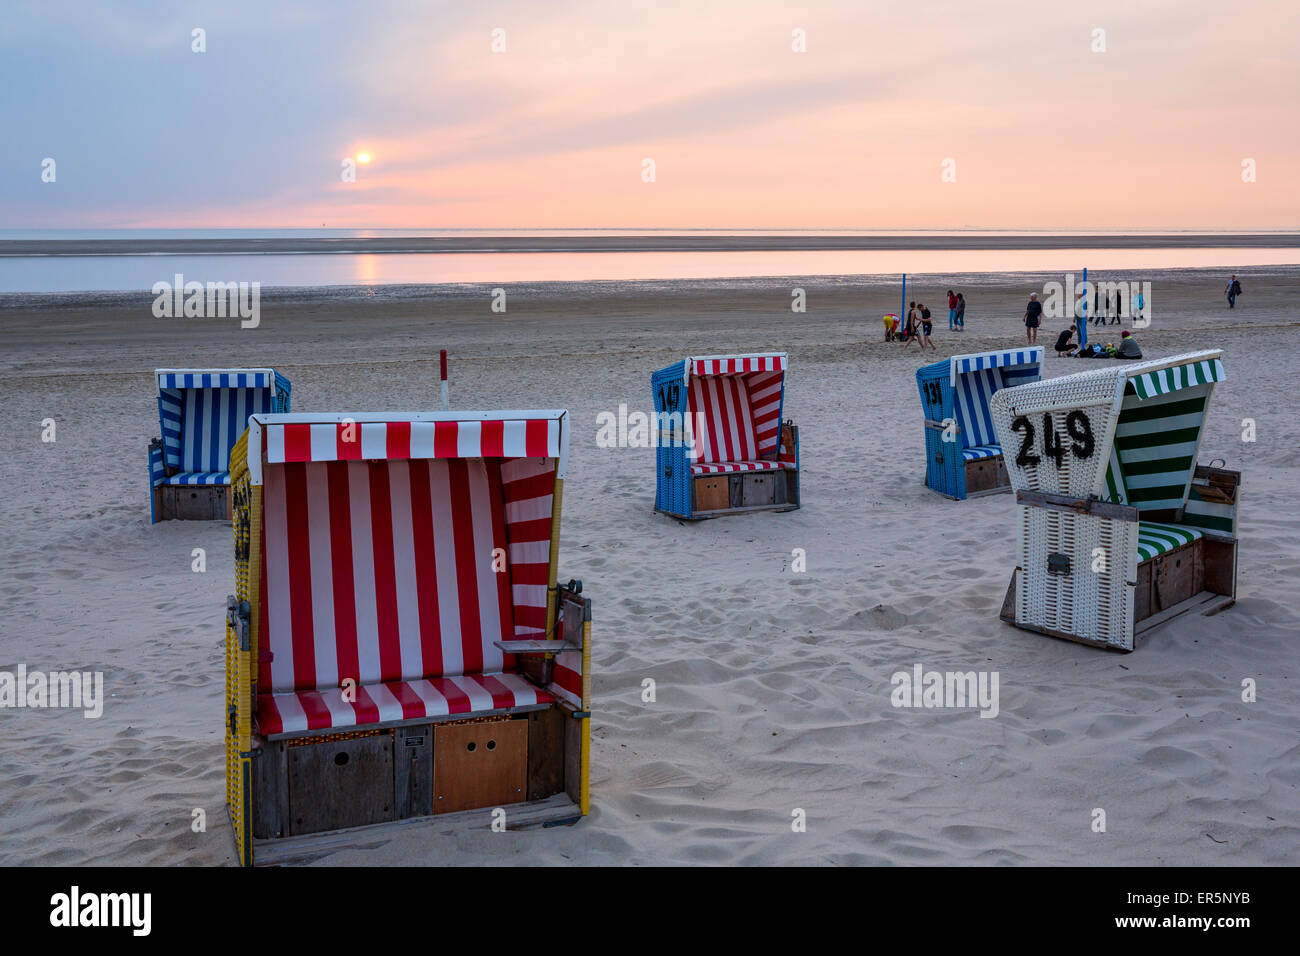 Liegestühle in der Abenddämmerung am Strand, Insel Langeoog, Nordsee, Ostfriesischen Inseln, Ostfriesland, Niedersachsen, Deutschland, Europa Stockfoto